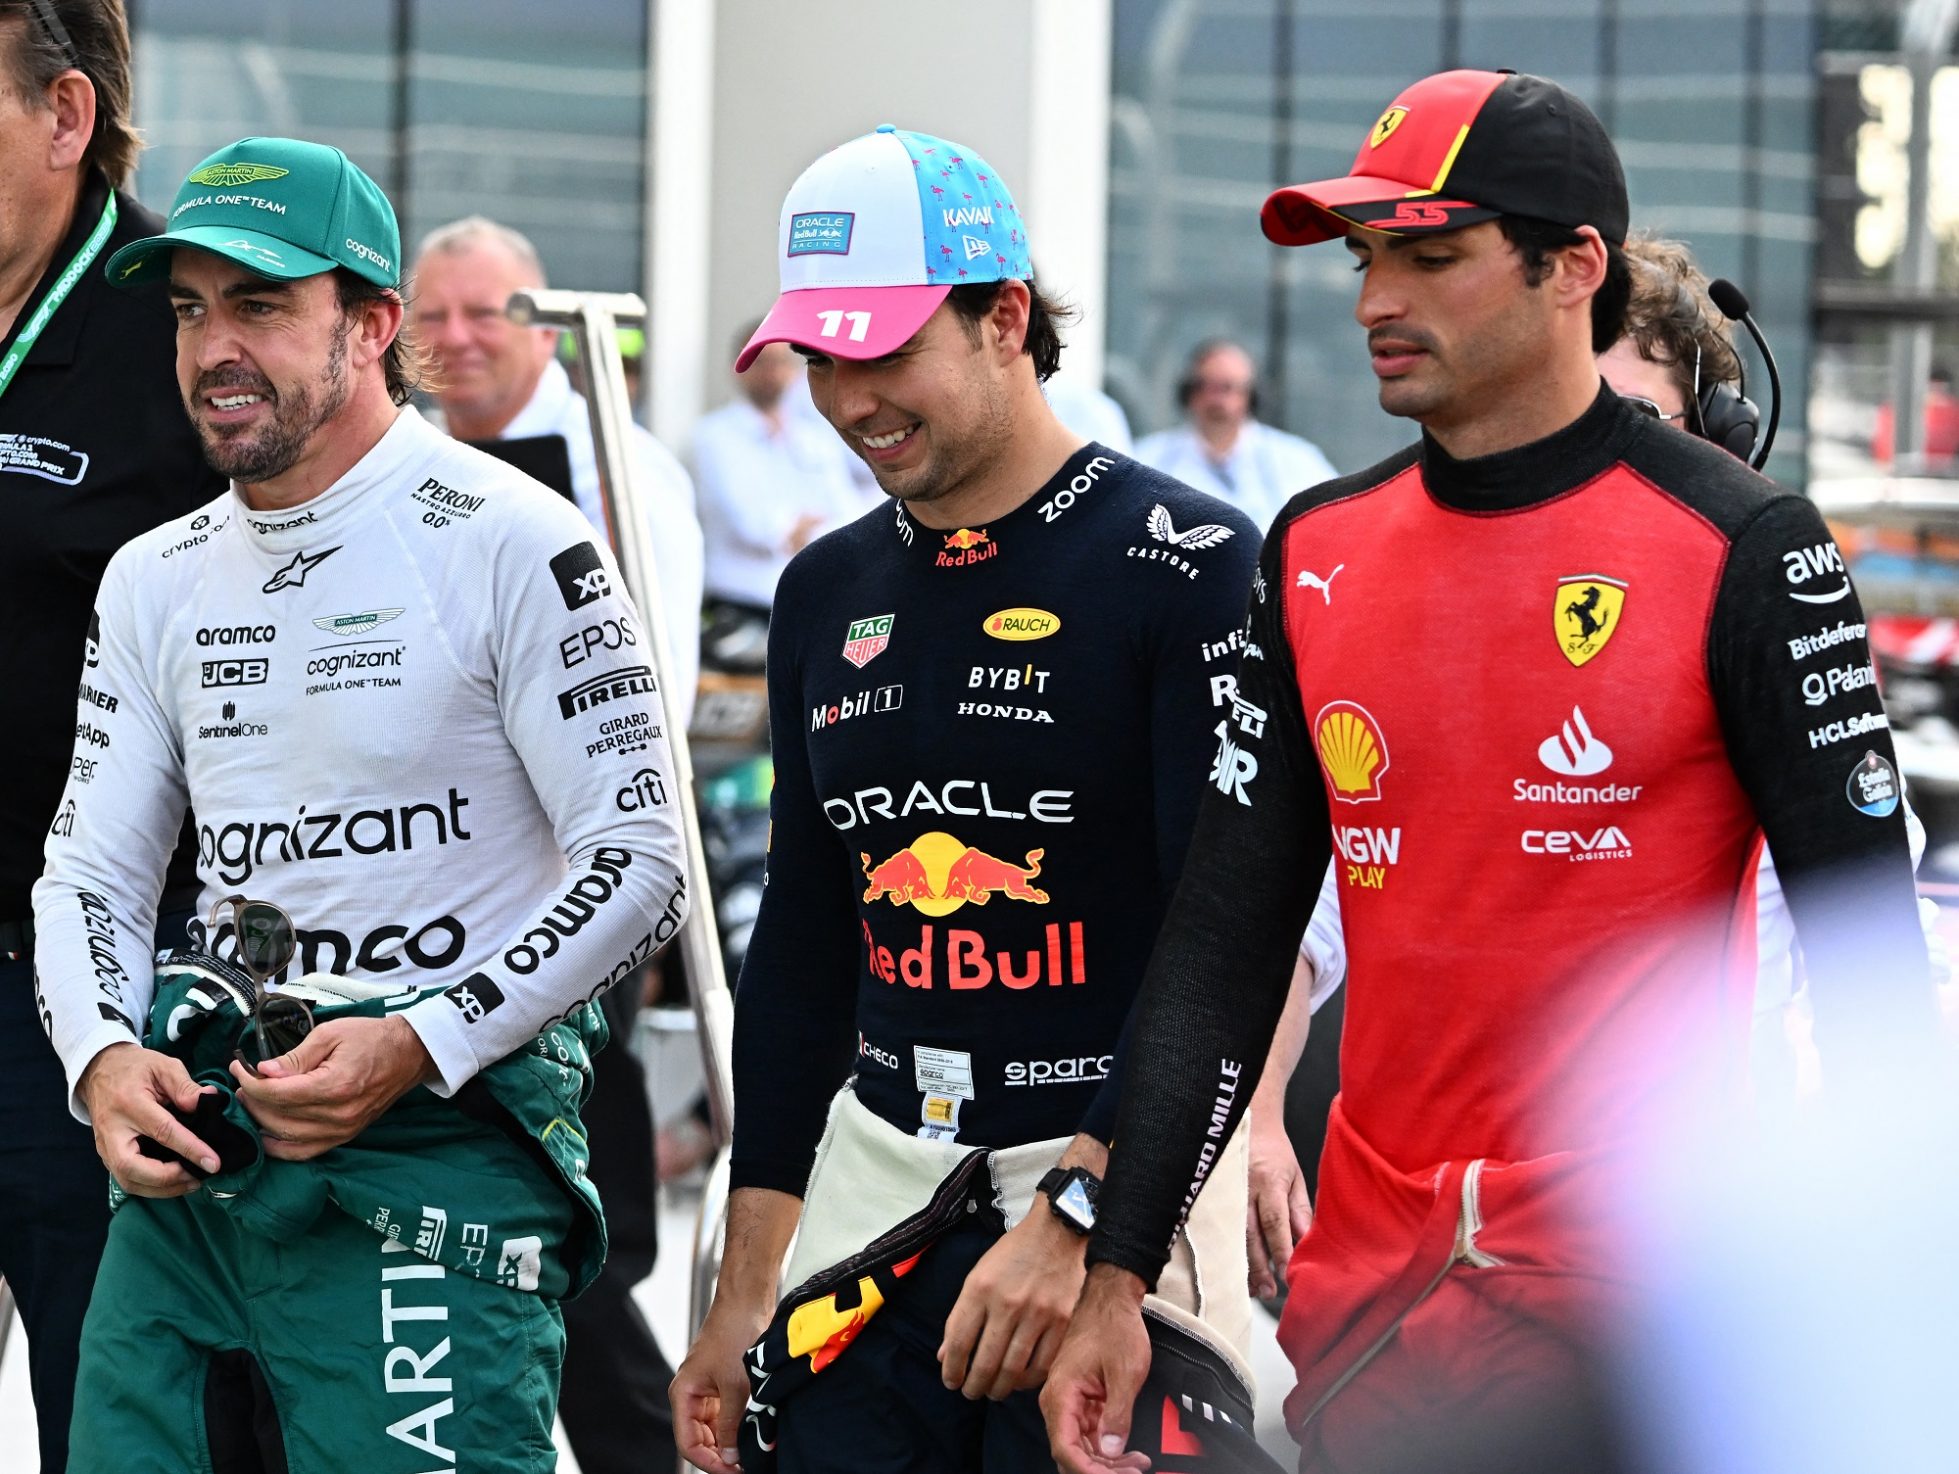 Gehen in Miami als erste ins Rennen: Fernando Alonso (2.), Sergio Perez (Pole) und Carlos Sainz Jr. (3.) nach dem Qualifying (Bild: Chandan Khanna/AFP)